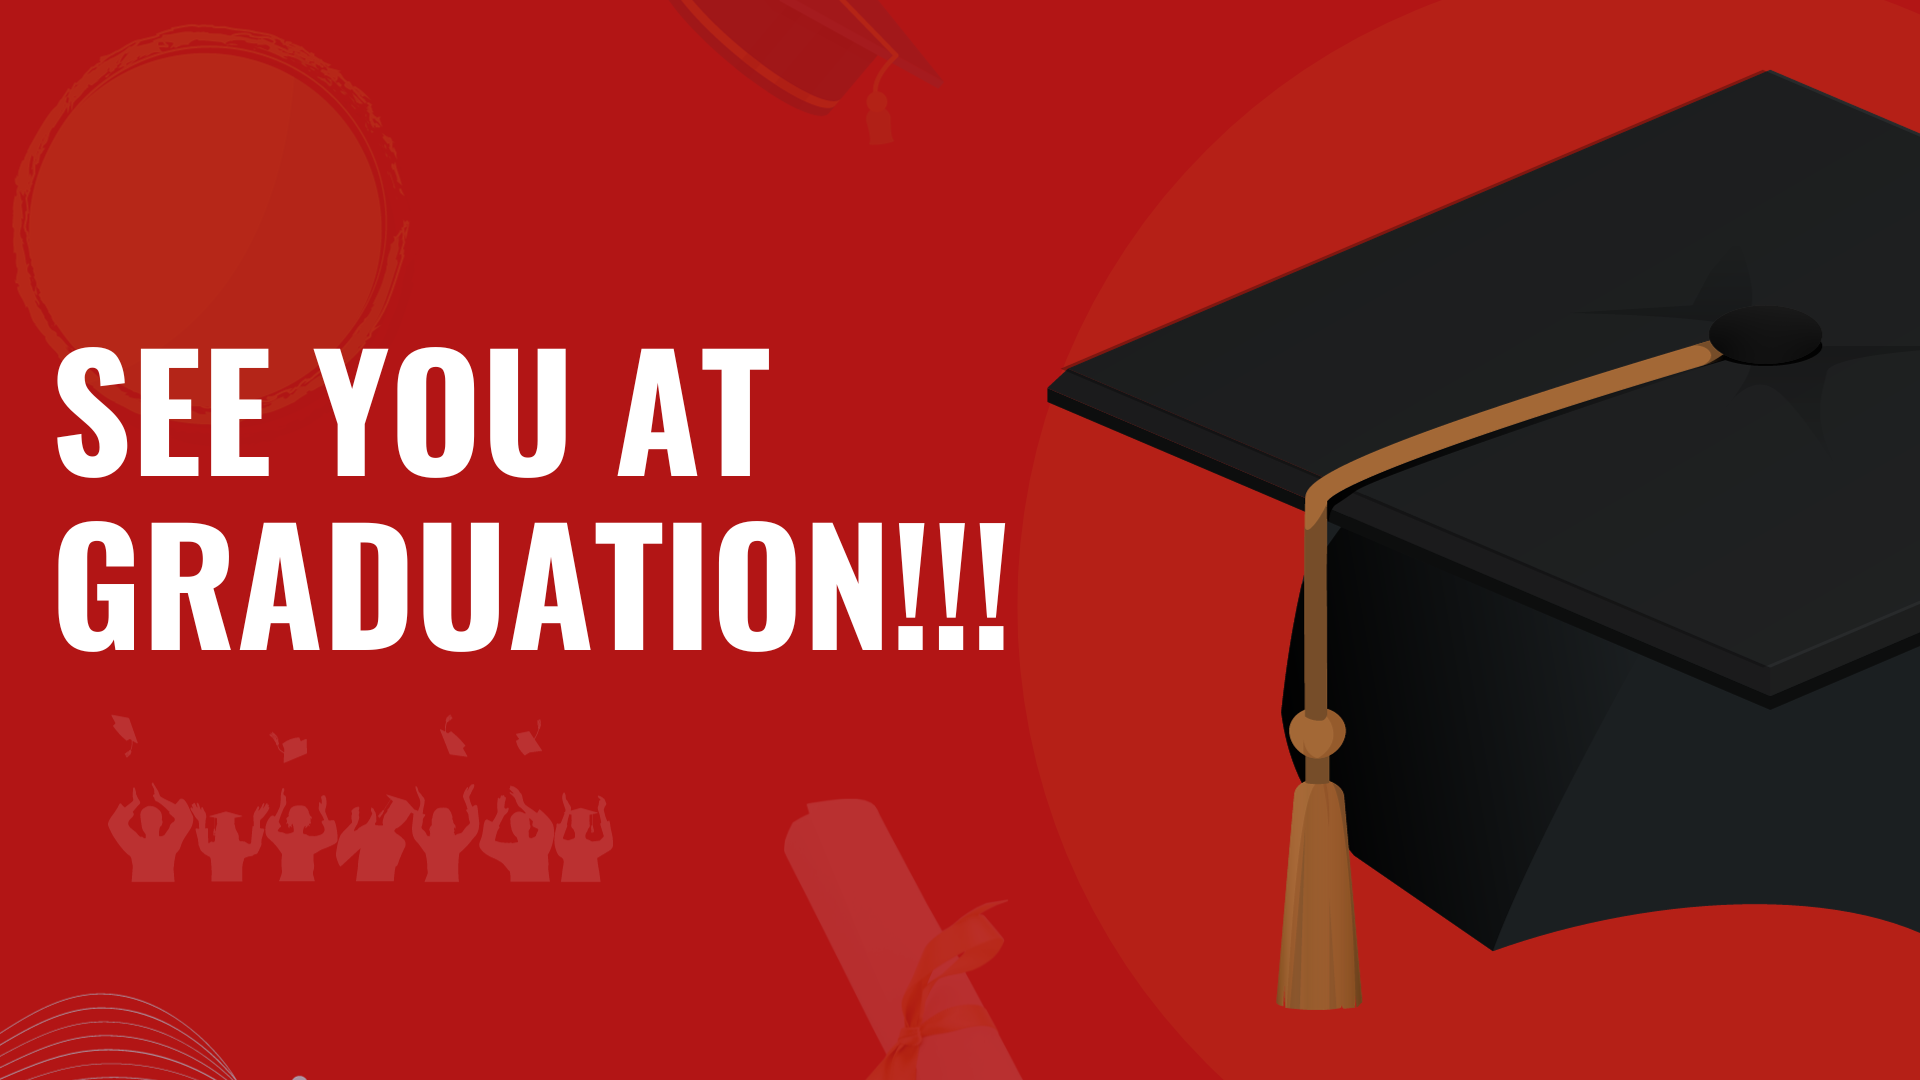 image features a graduation cap.